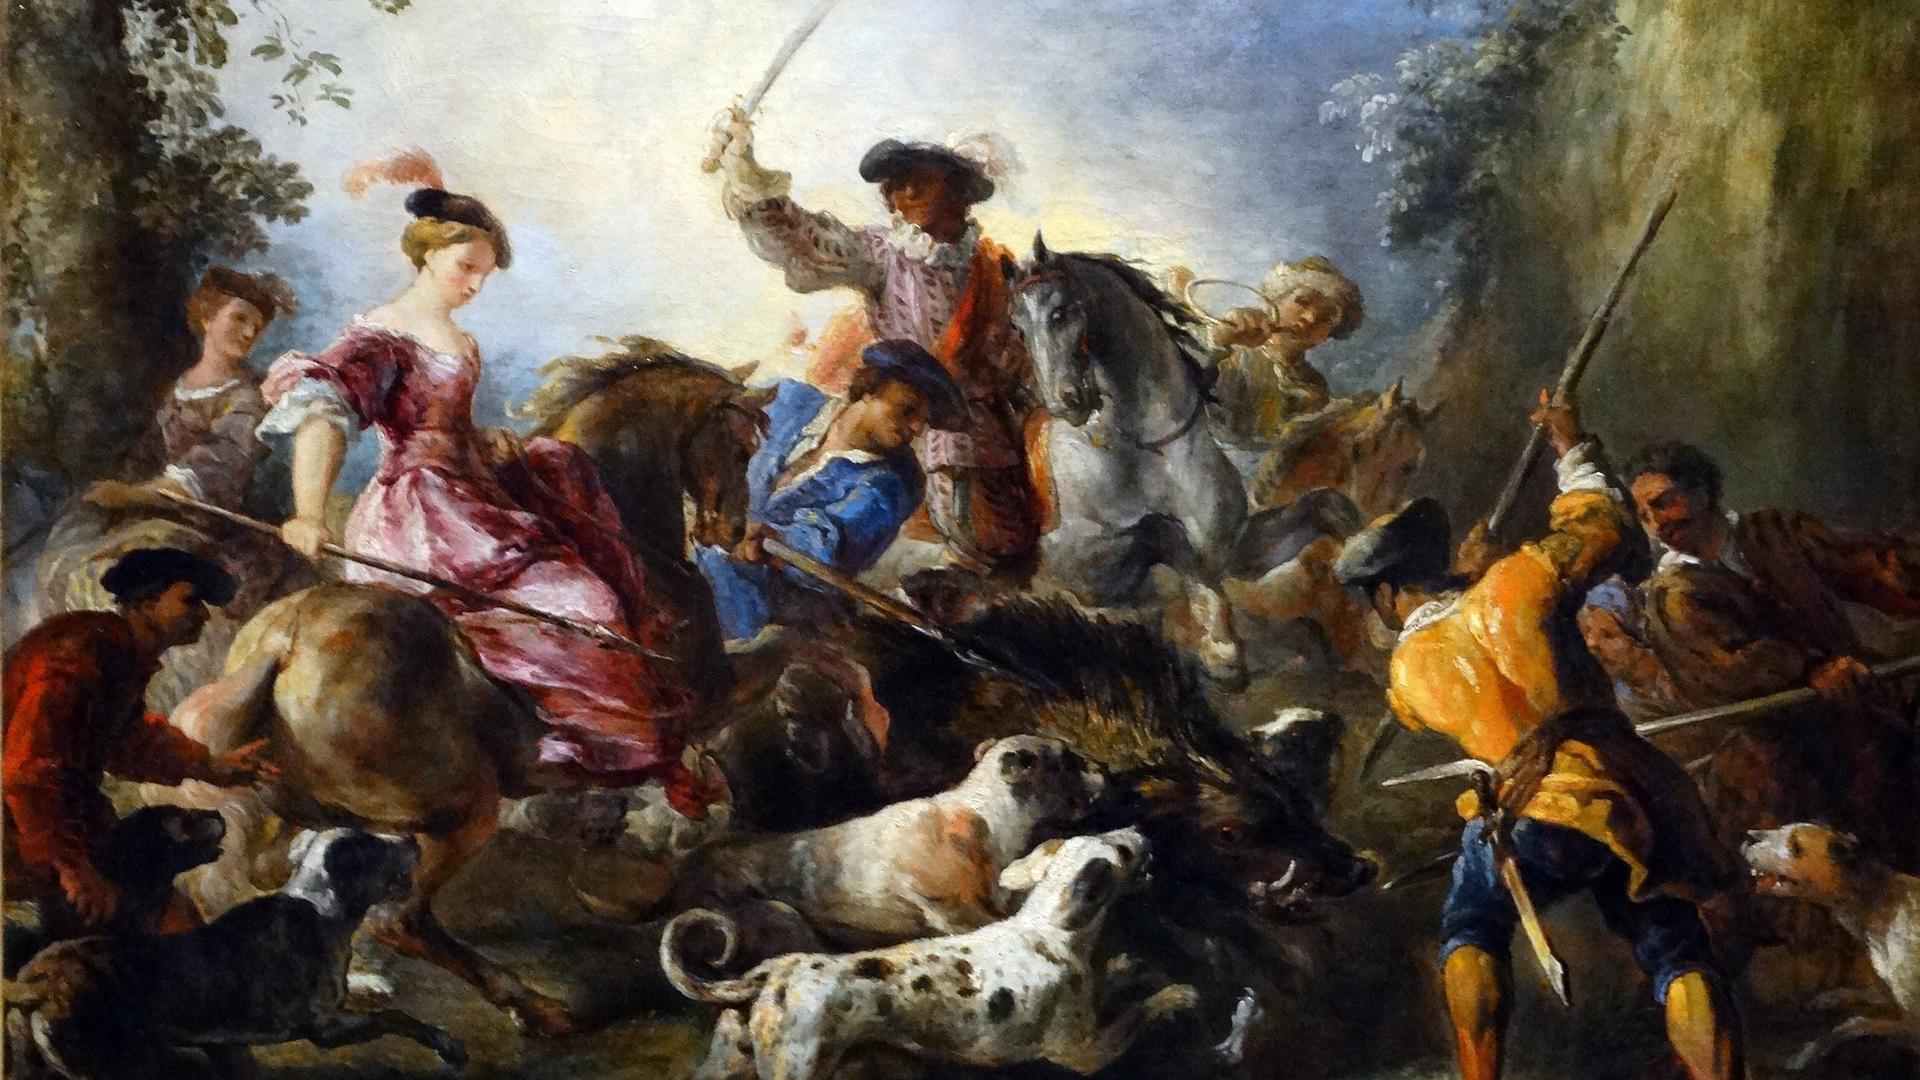 Gemälde zeigt eine barocke Jagdszene, bei ein Wildschwein getötet wird.